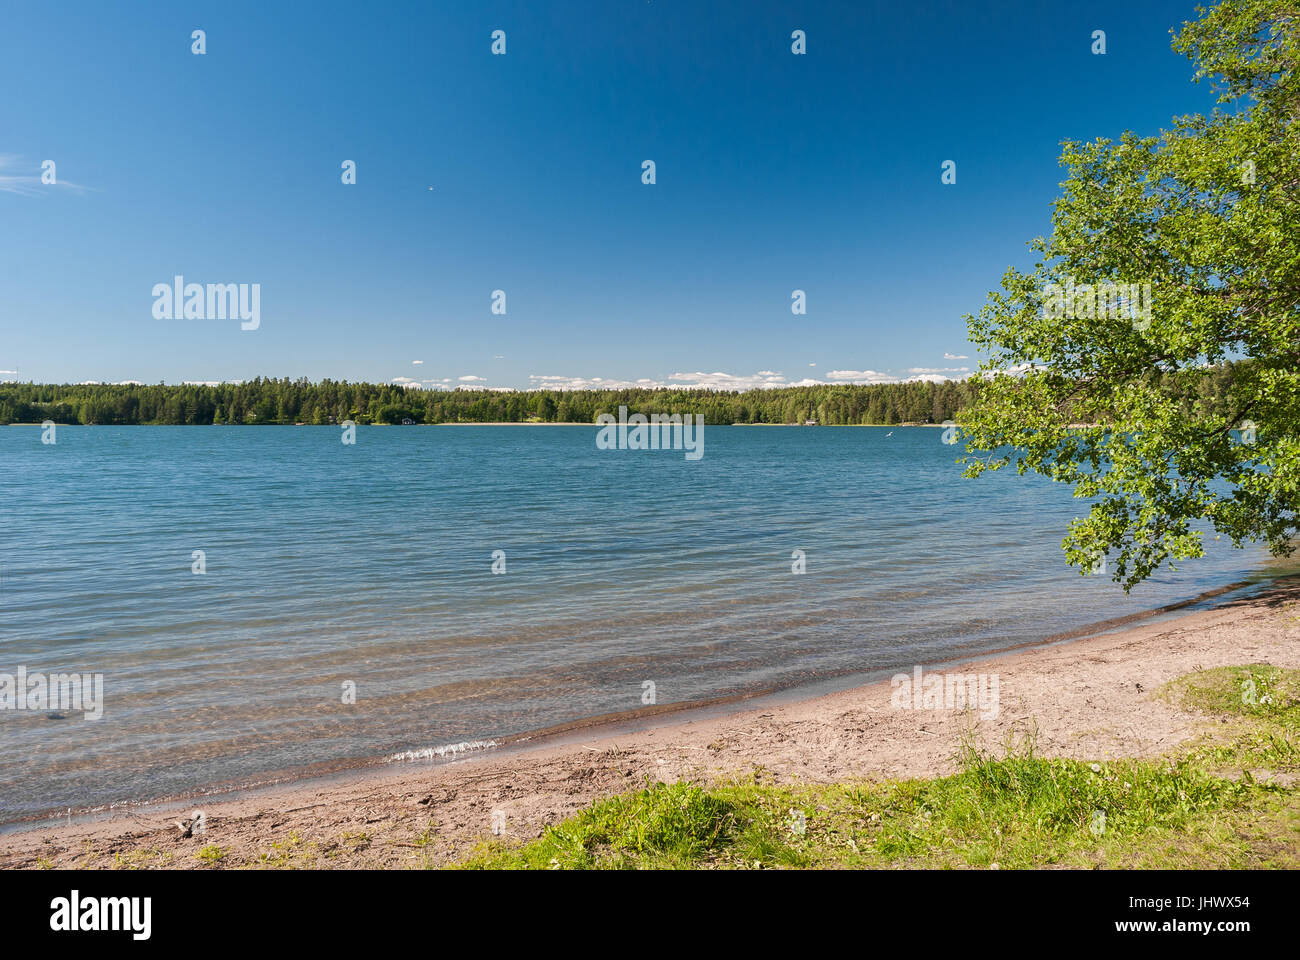 The lake of Hvittrask, near Helsinki, during the summer Stock Photo